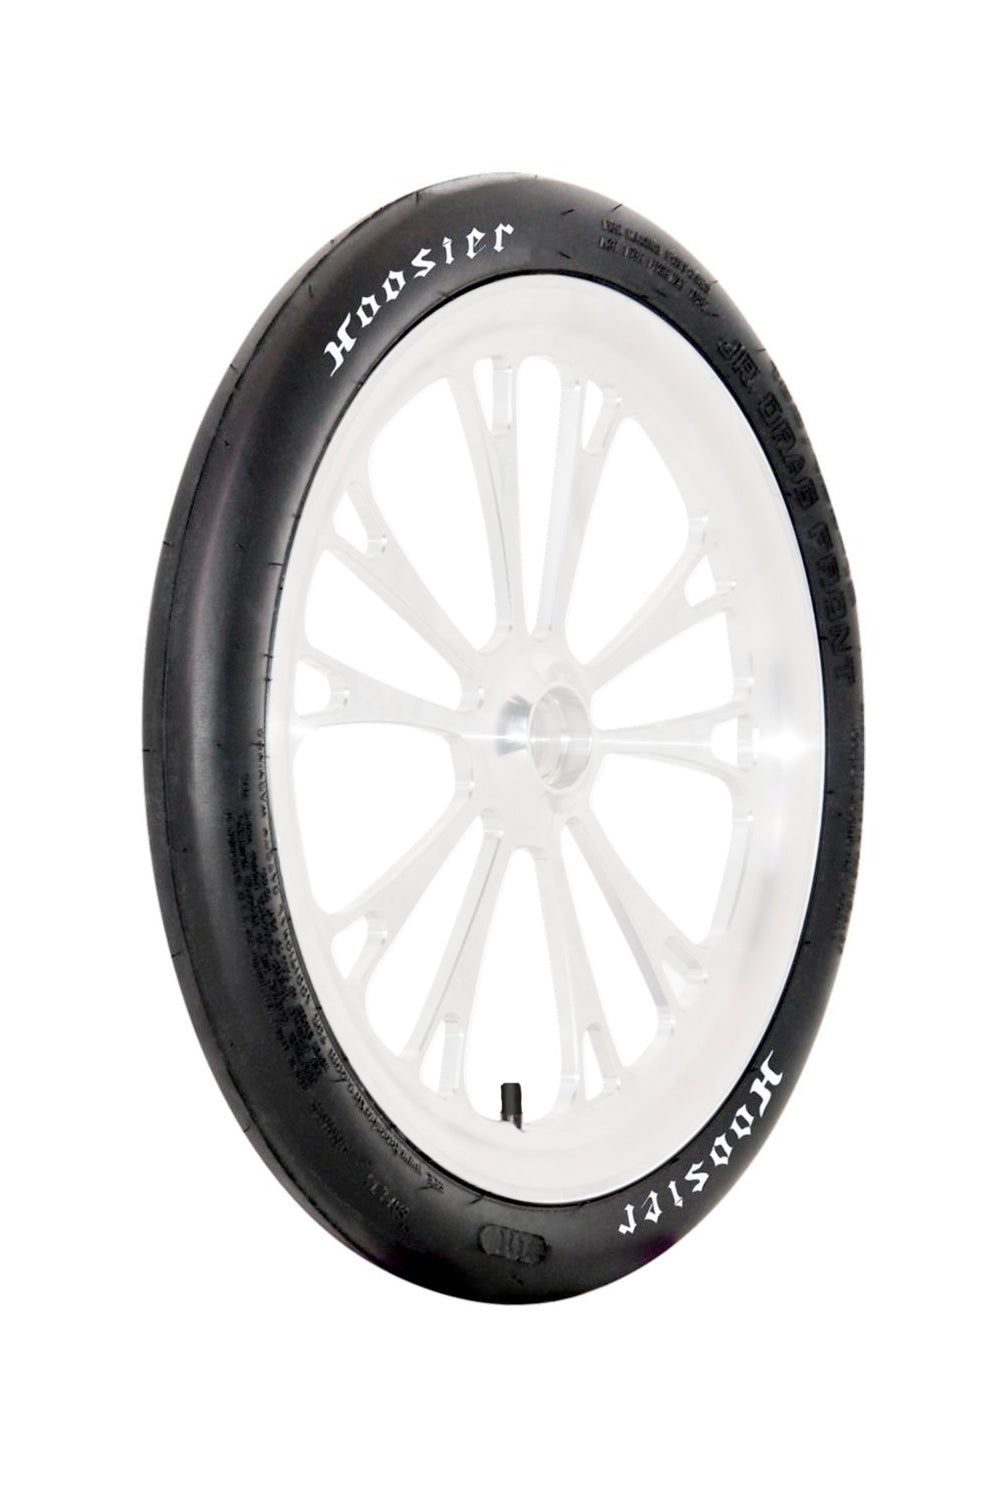 Hoosier 16.0/1.5-12 Jr Dragster Tire HOO18010